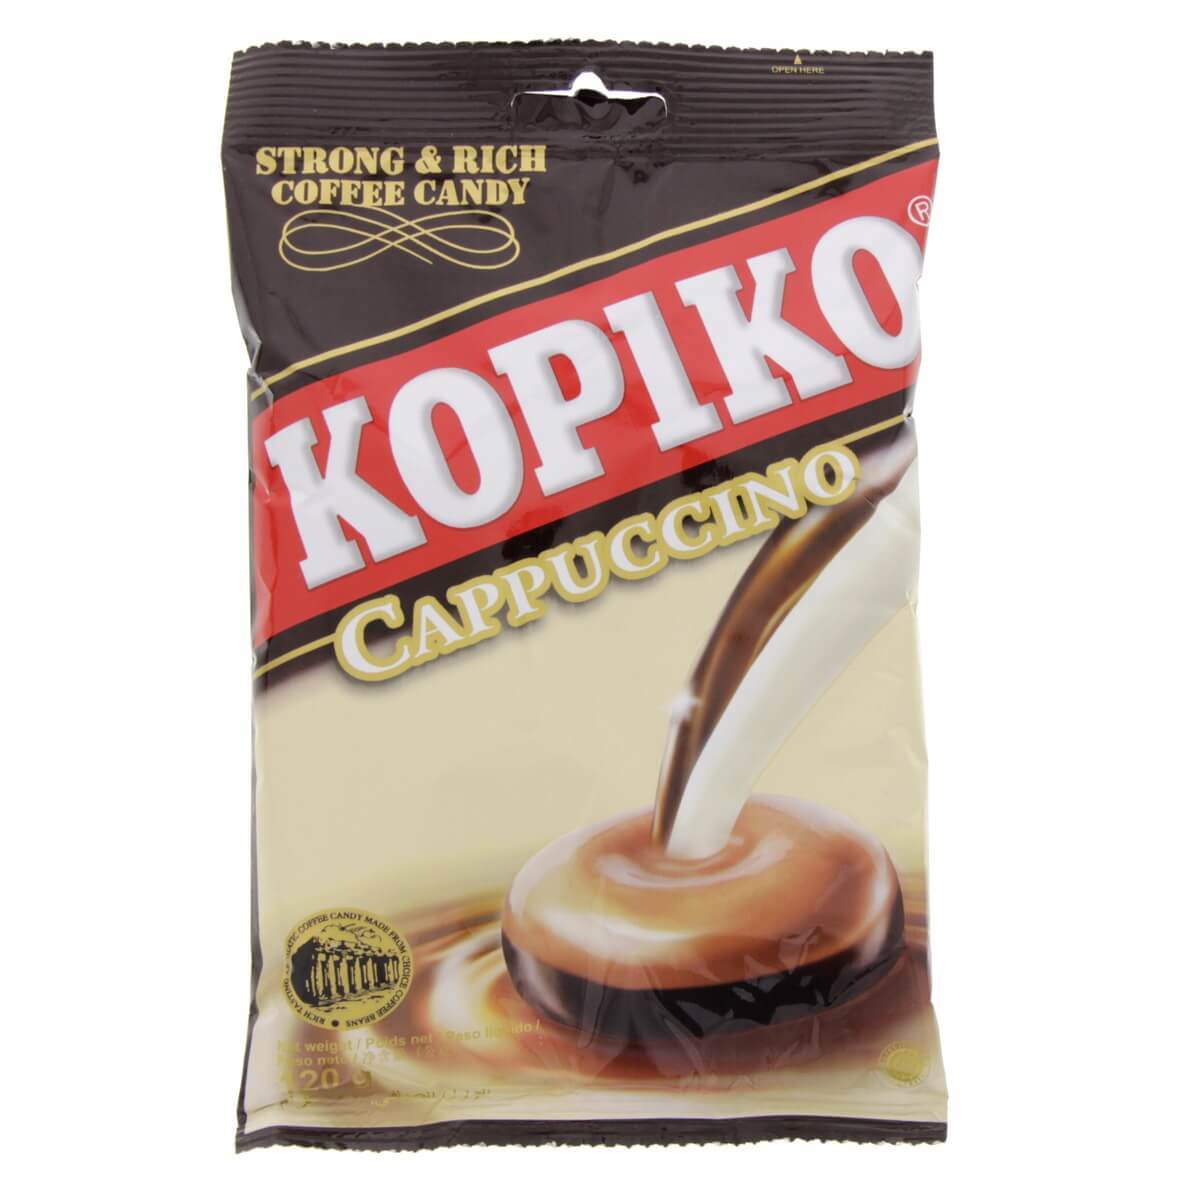 Kopiko Cappuccino Candy - 120g - 0